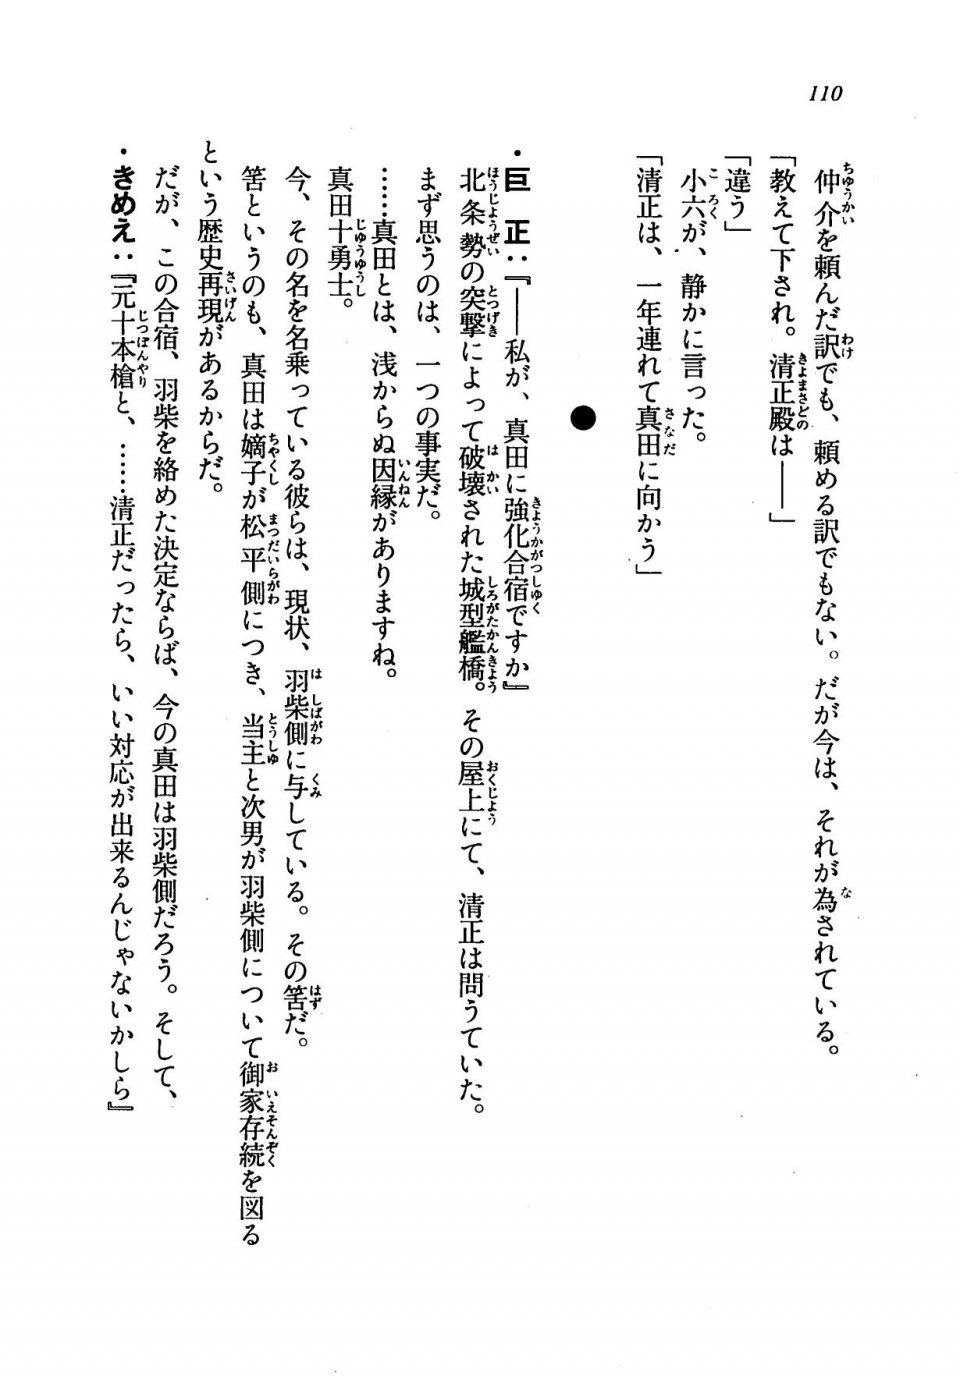 Kyoukai Senjou no Horizon LN Vol 19(8A) - Photo #110